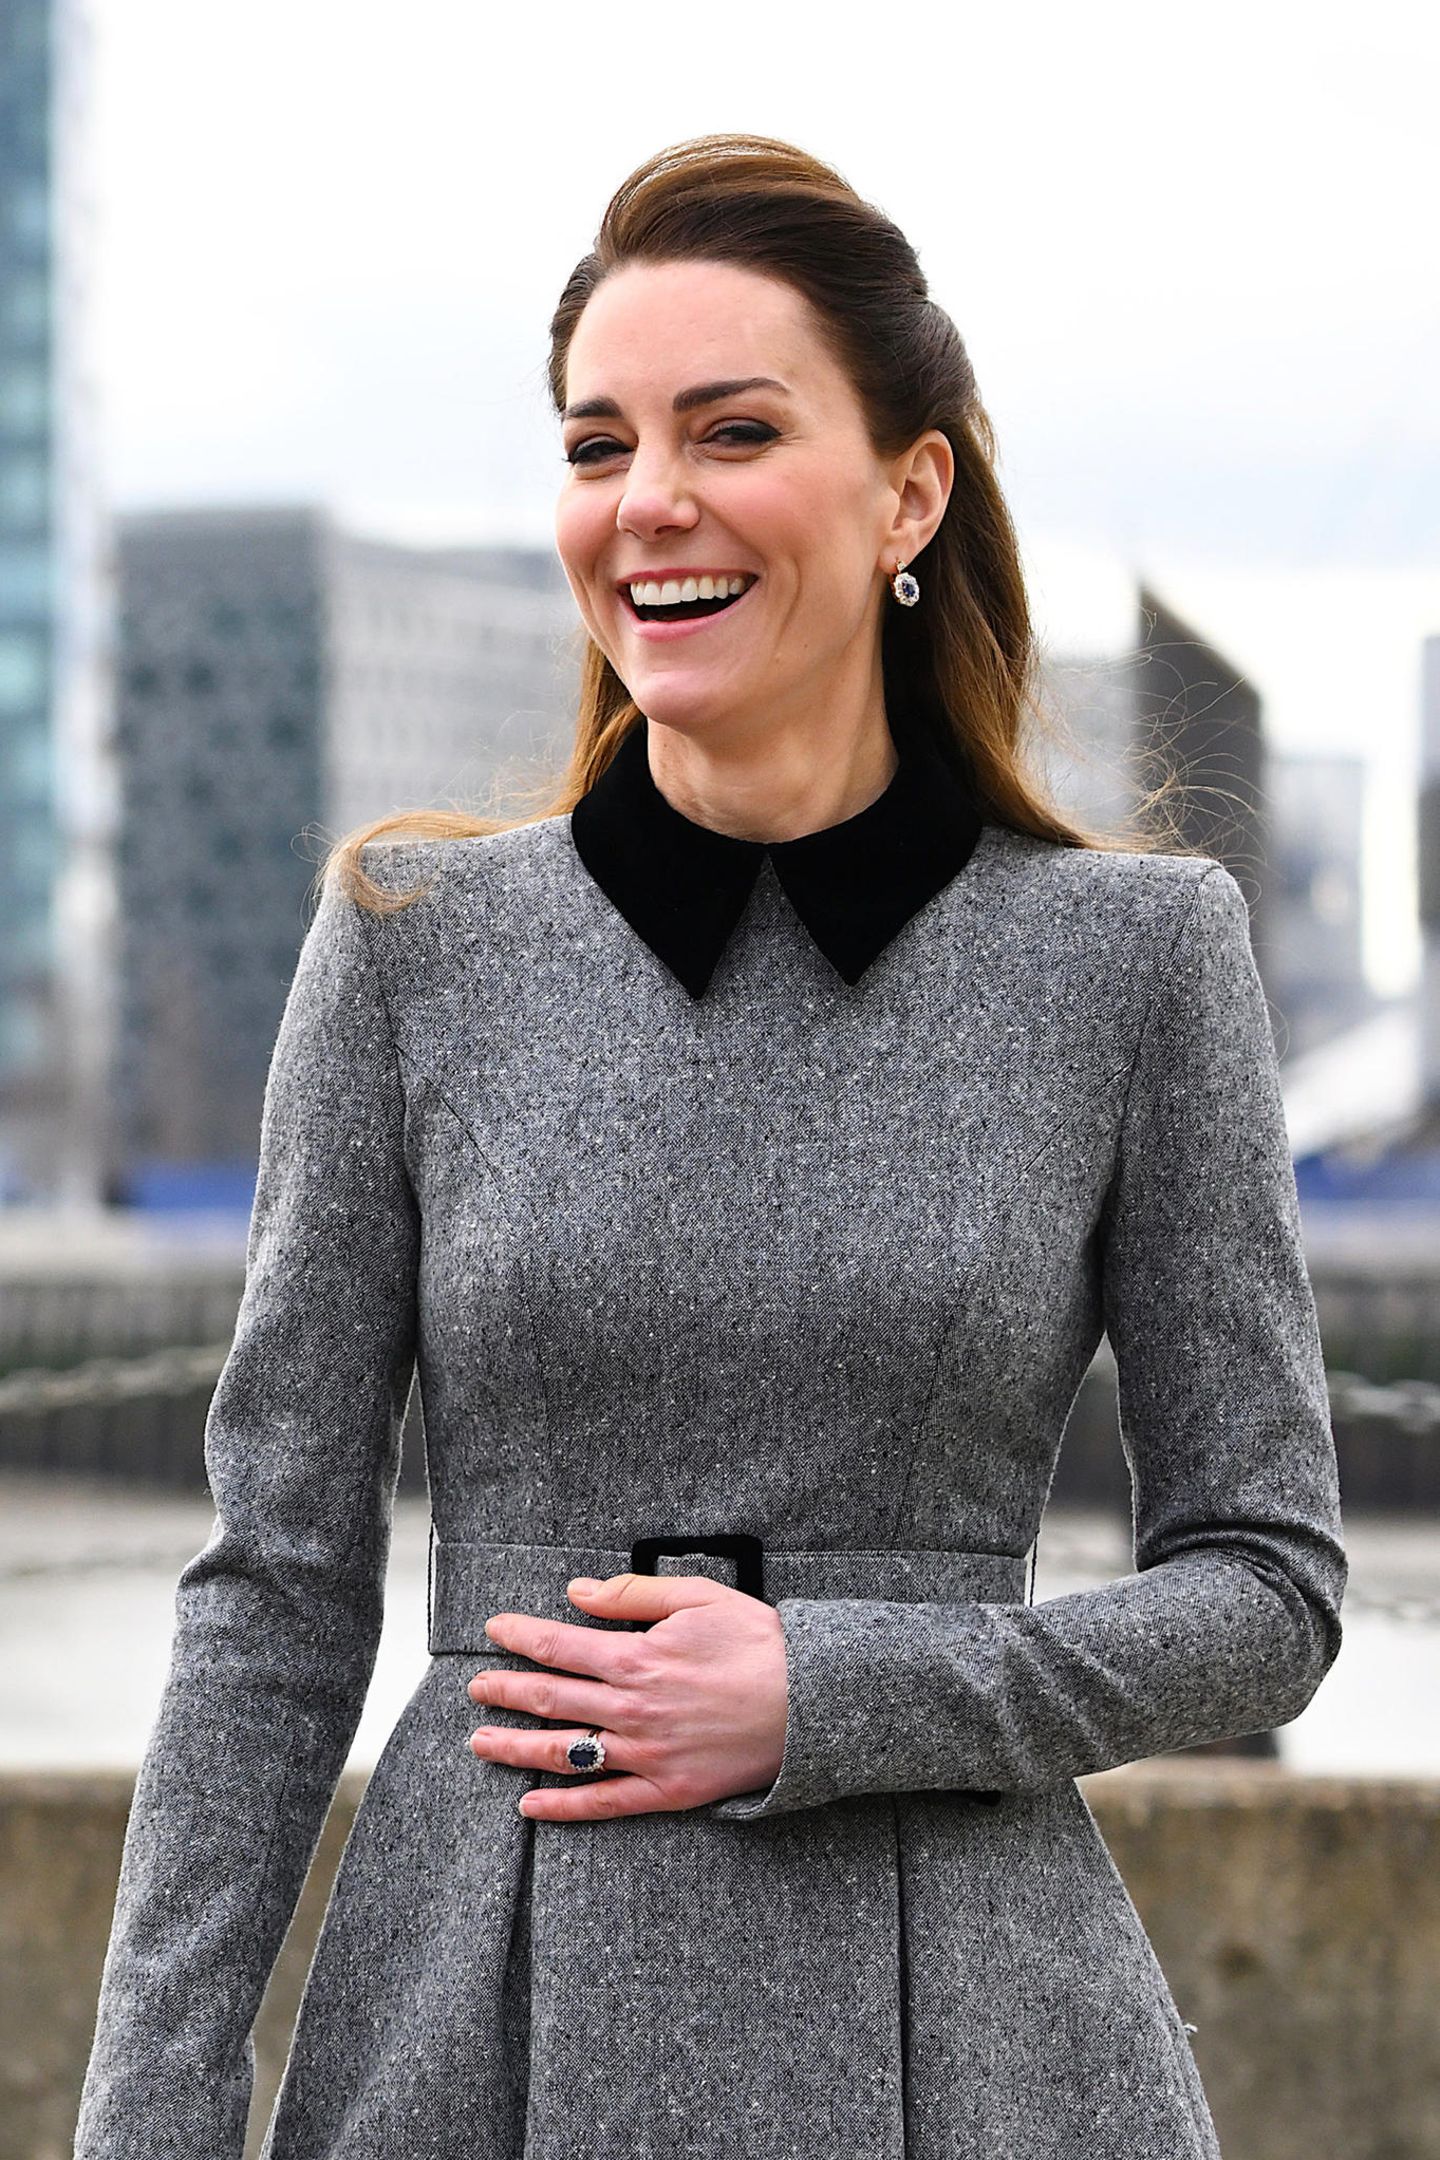 Herzogin Kate hat an diesem Tag die "The Prince's Foundation" in London besucht. Die 40-Jährige ist für ihre braunen lockigen Haare bekannt. Nun hat sich Kate für eine Variation ihrer Lieblingsfrisur entschieden: Der toupierte obere Teil der Haare ist zurückgesteckt worden. Eins steht fest: Dieser kleiner Haar-Twist steht ihr unglaublich gut.